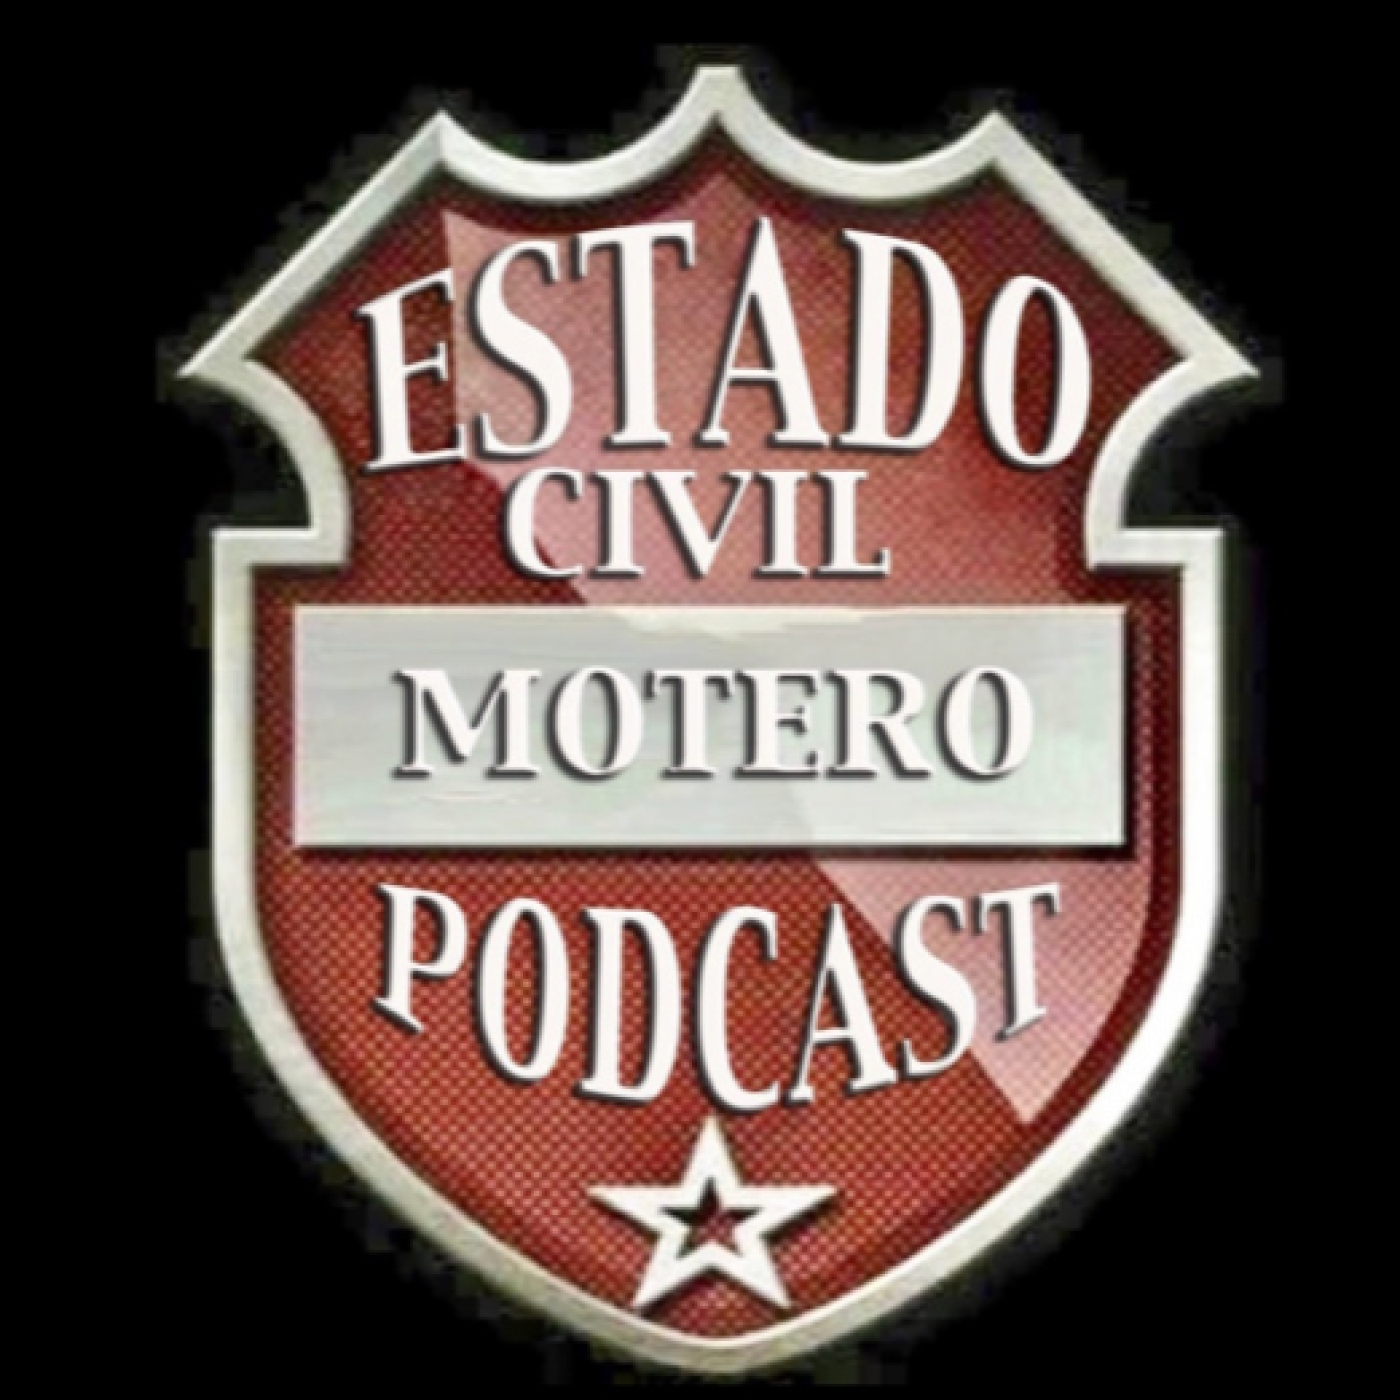 episodio 3×35 del podcast estado covil MOTERO